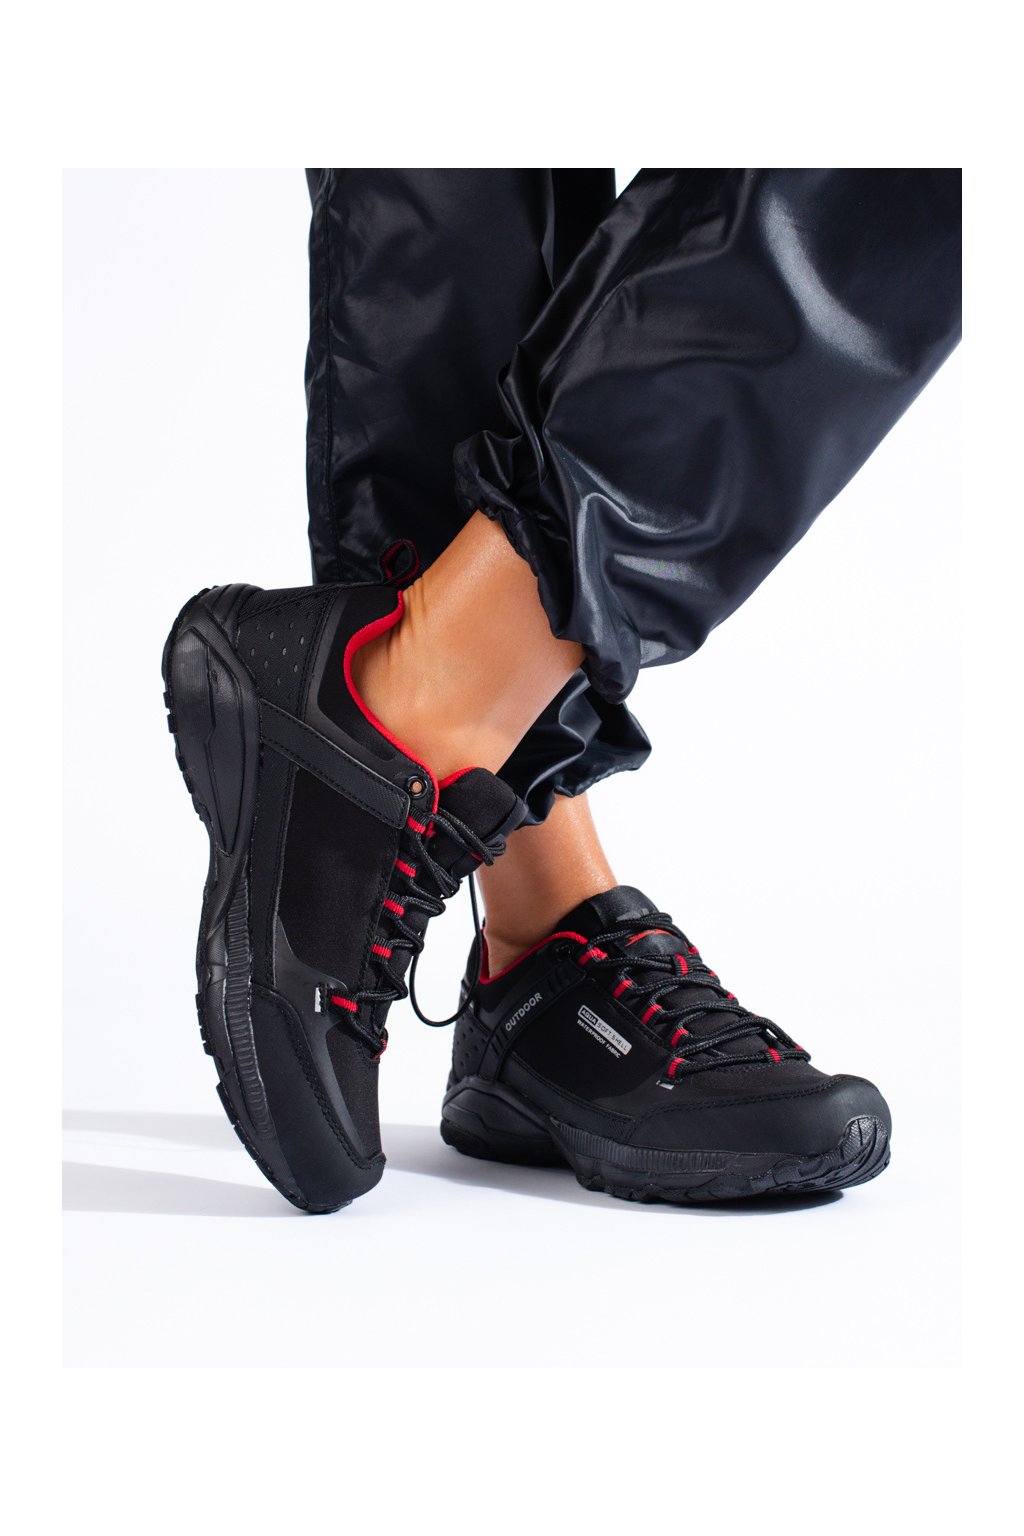 Čierne dámske trekingové topánky bez opätku podpätku Dk kod 1096B/R